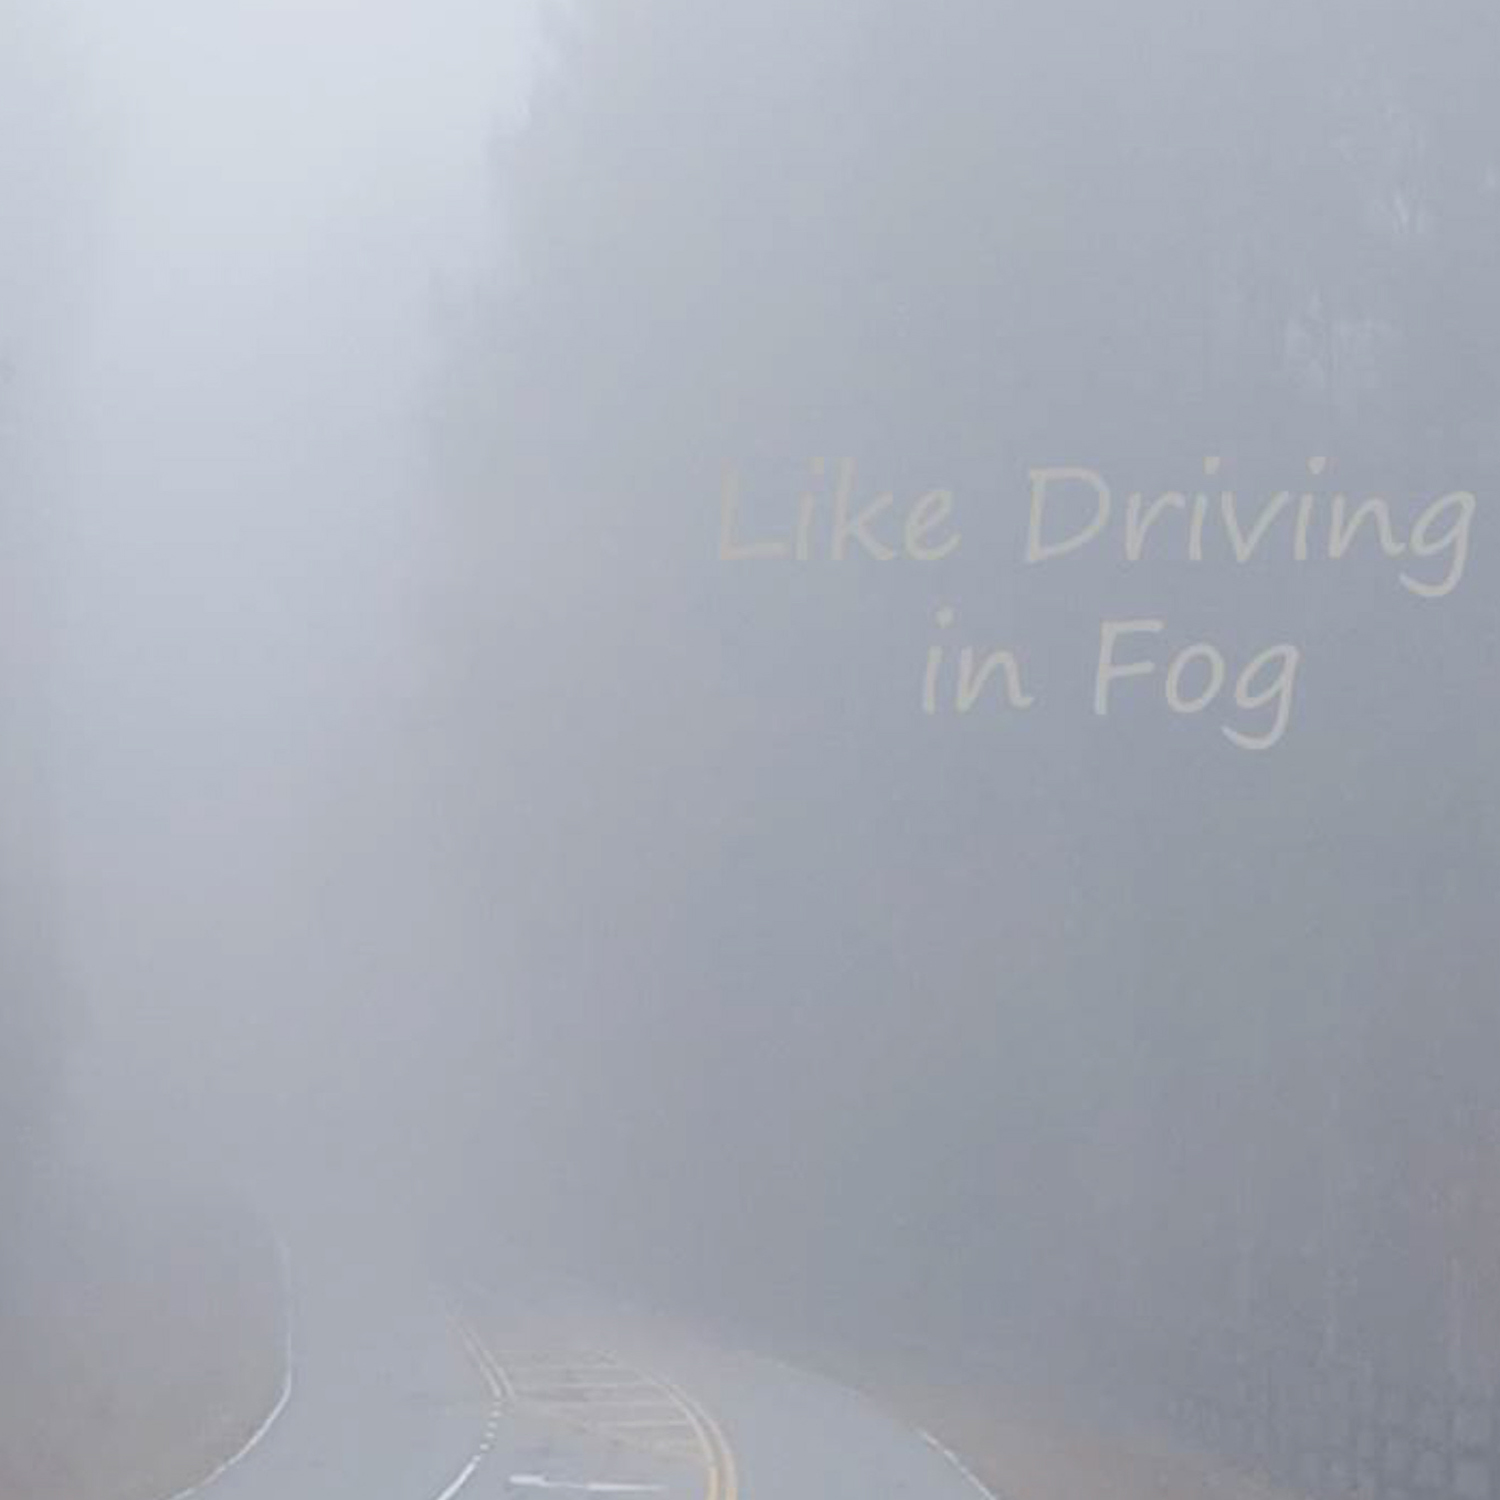 Like Driving in Fog